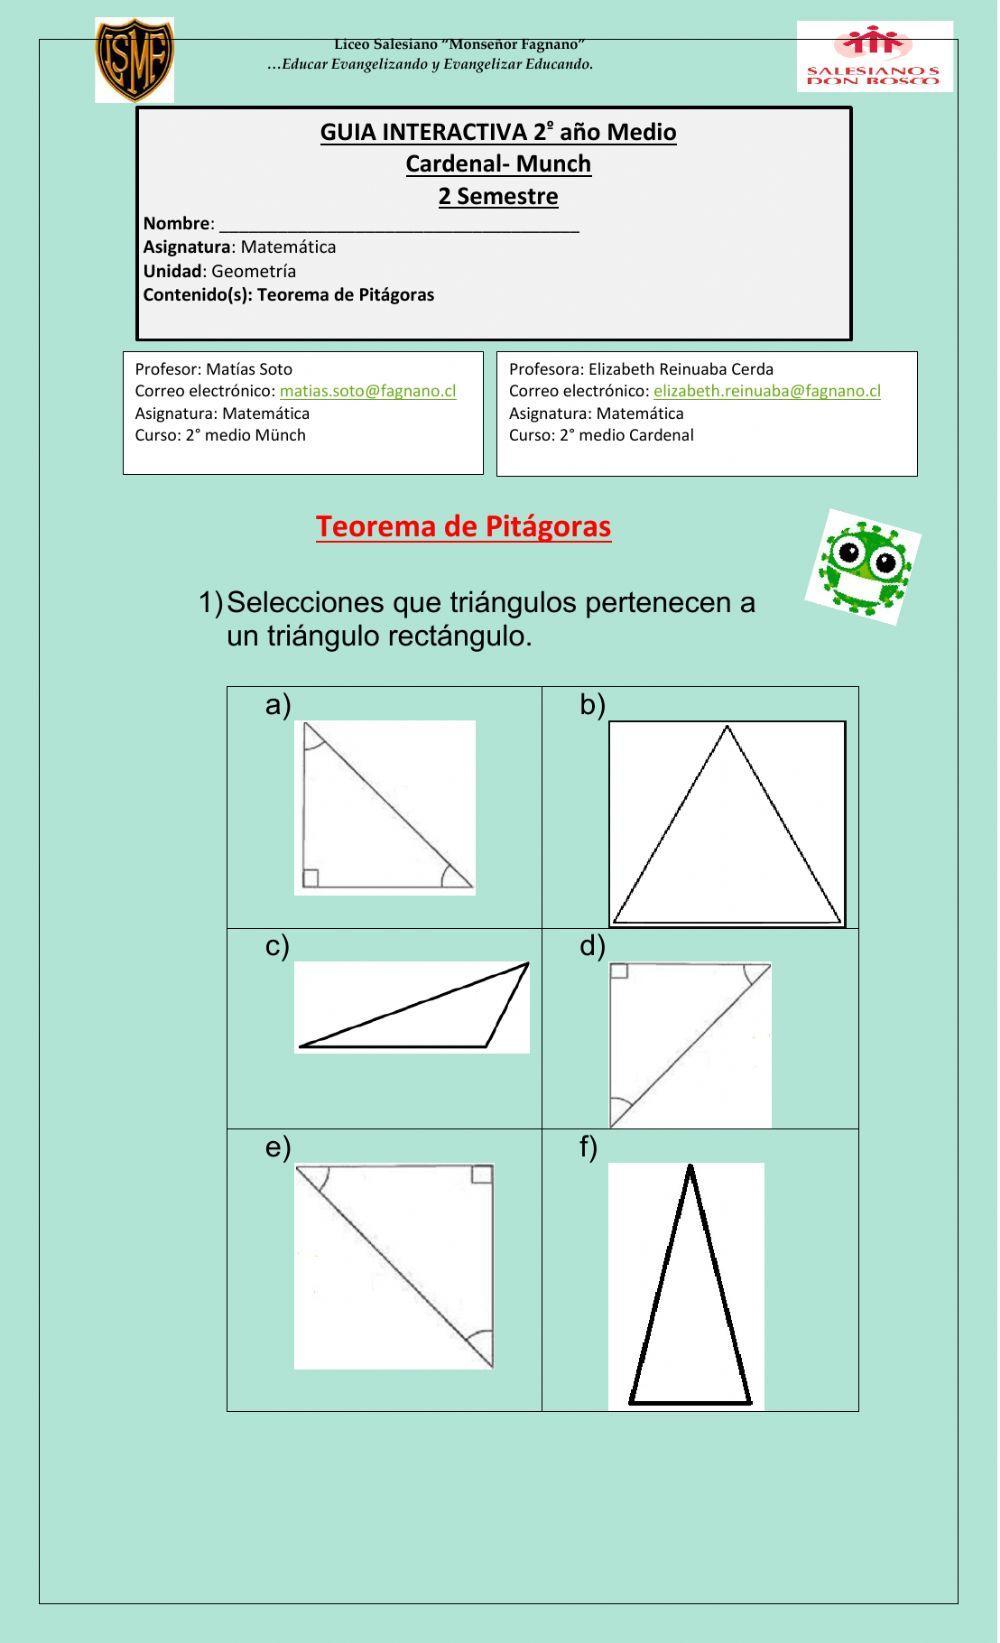 Teorema de pitagoras